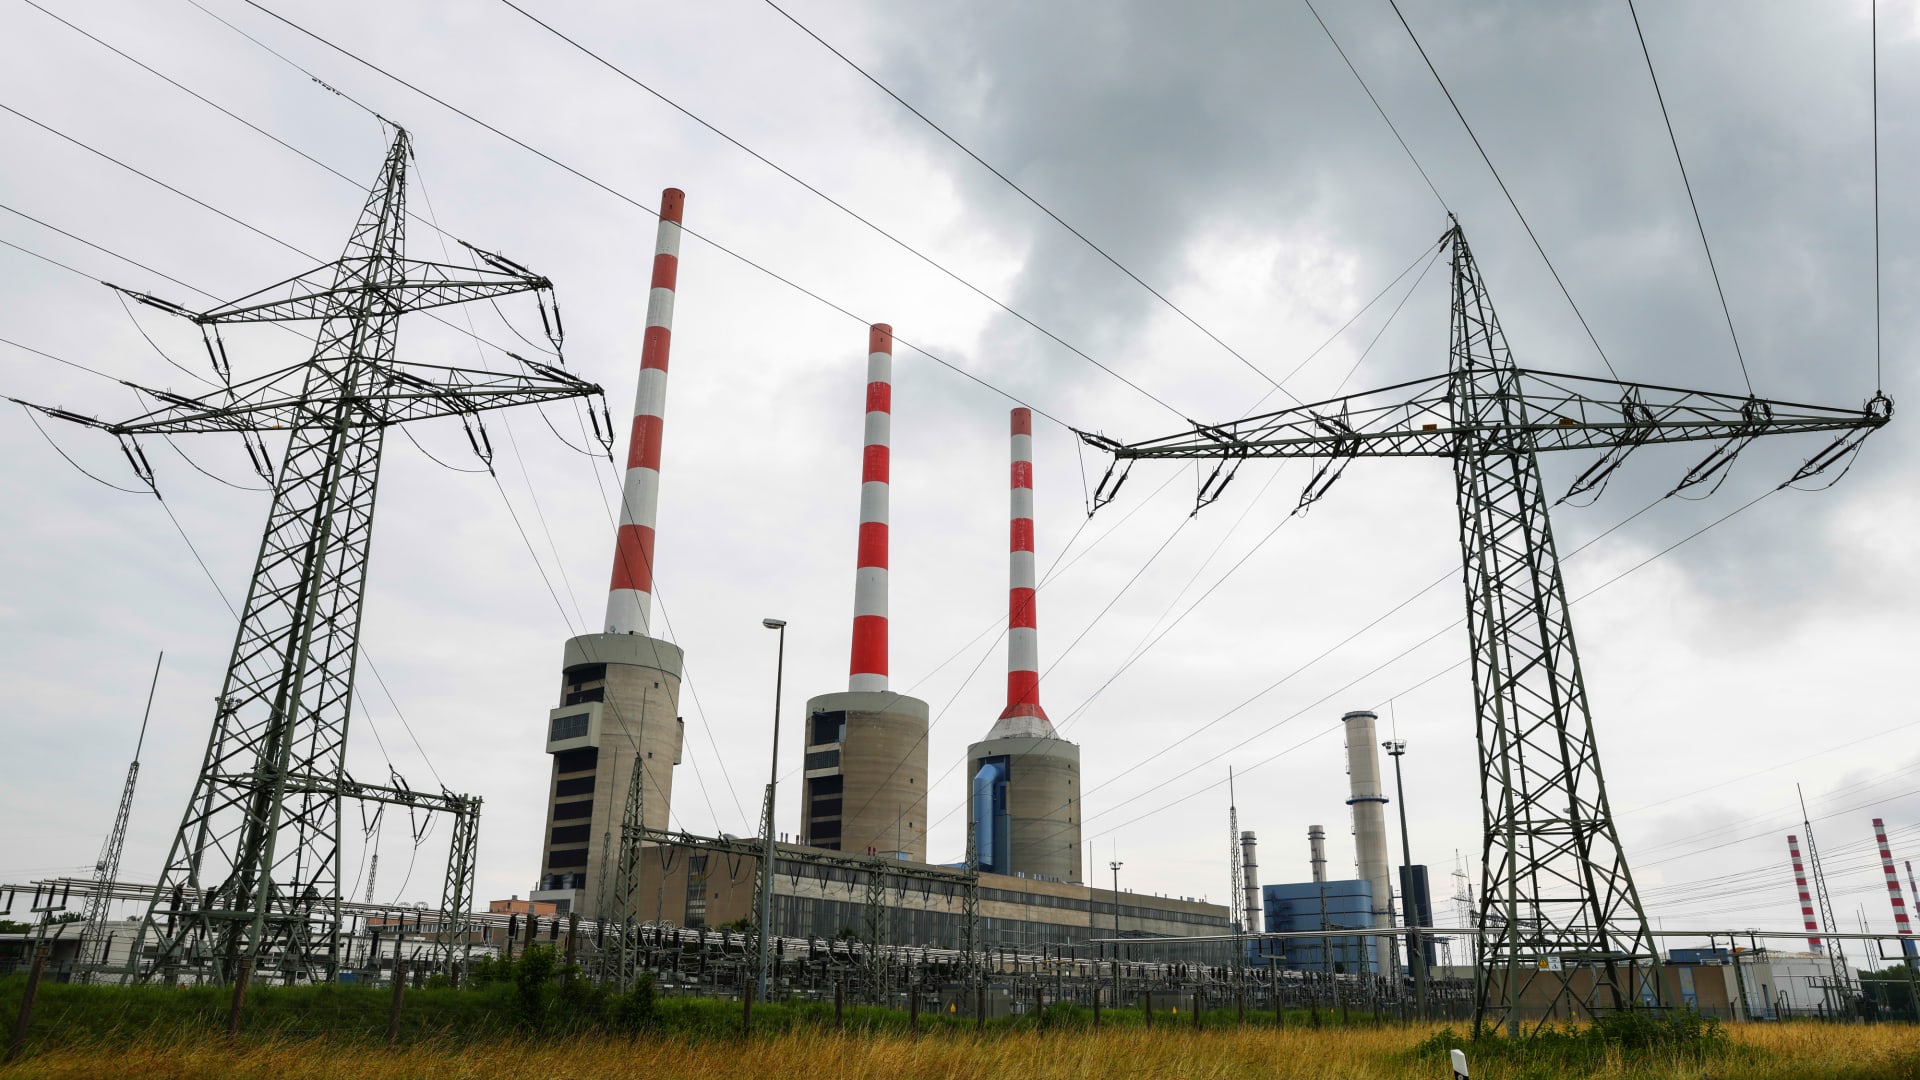 German firms sign deals in UAE as Berlin seeks alternative energy supplies